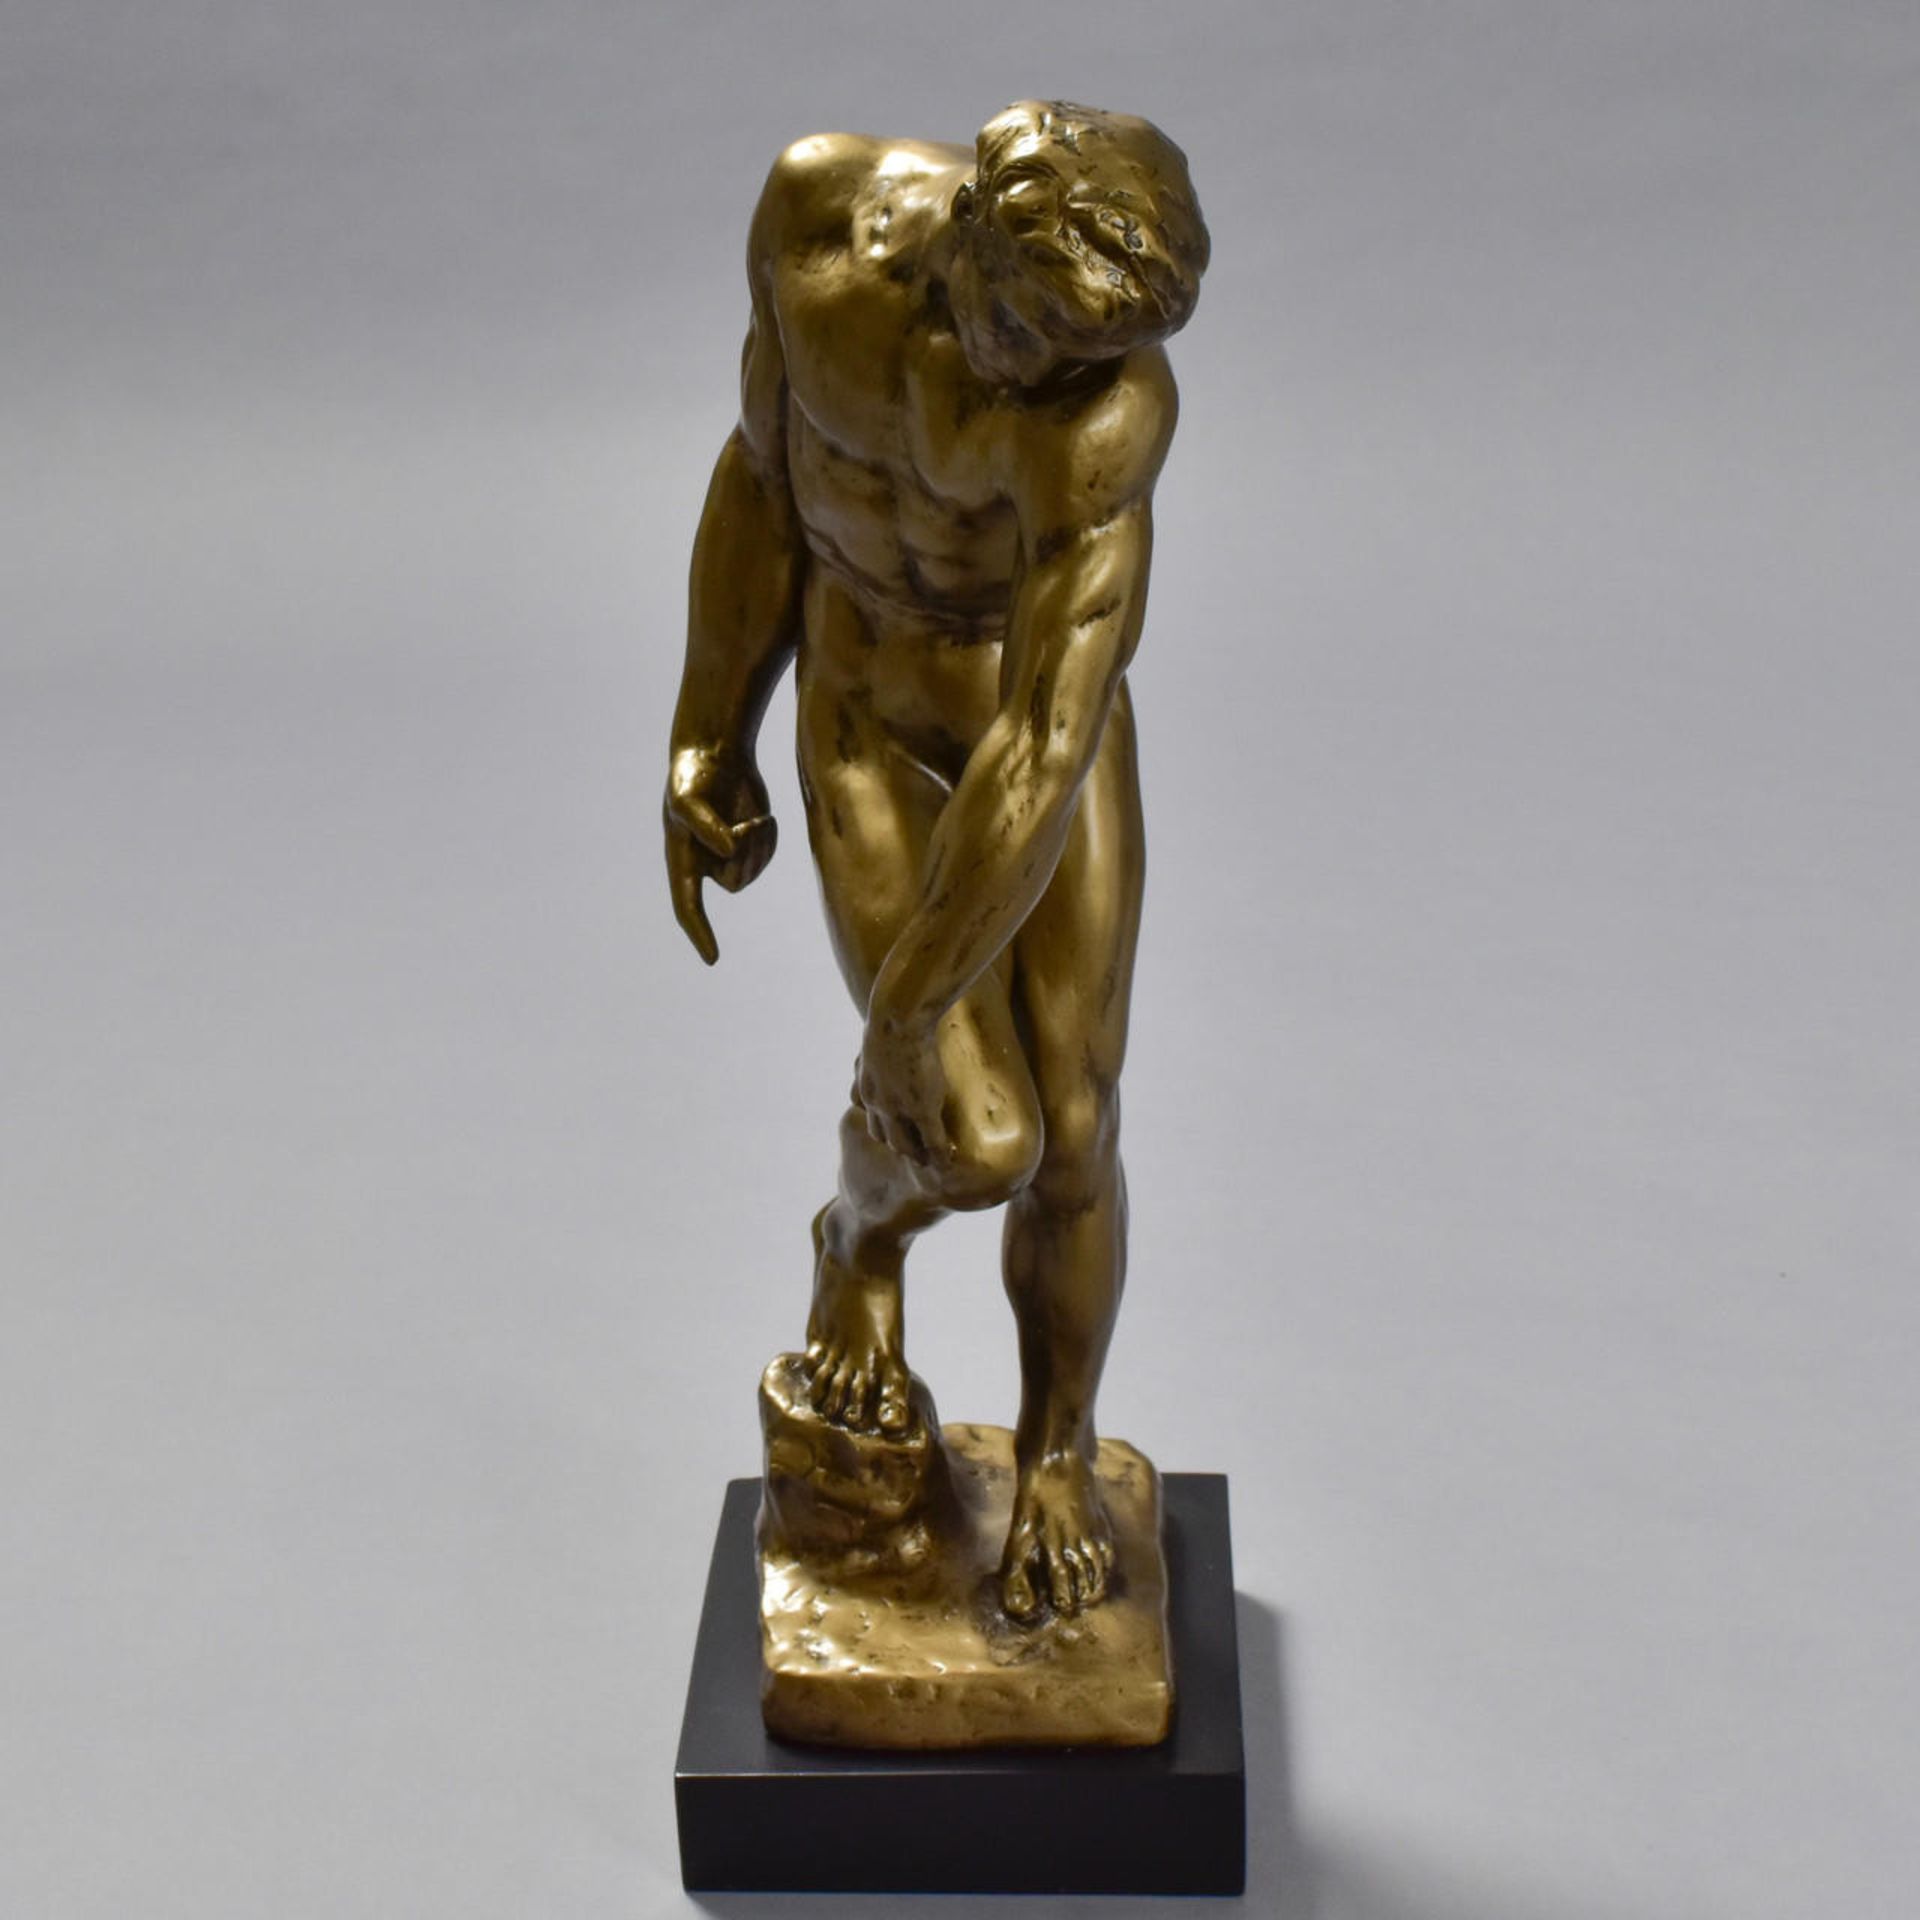 Auguste Rodin "Adam" Sculpture - Image 4 of 5